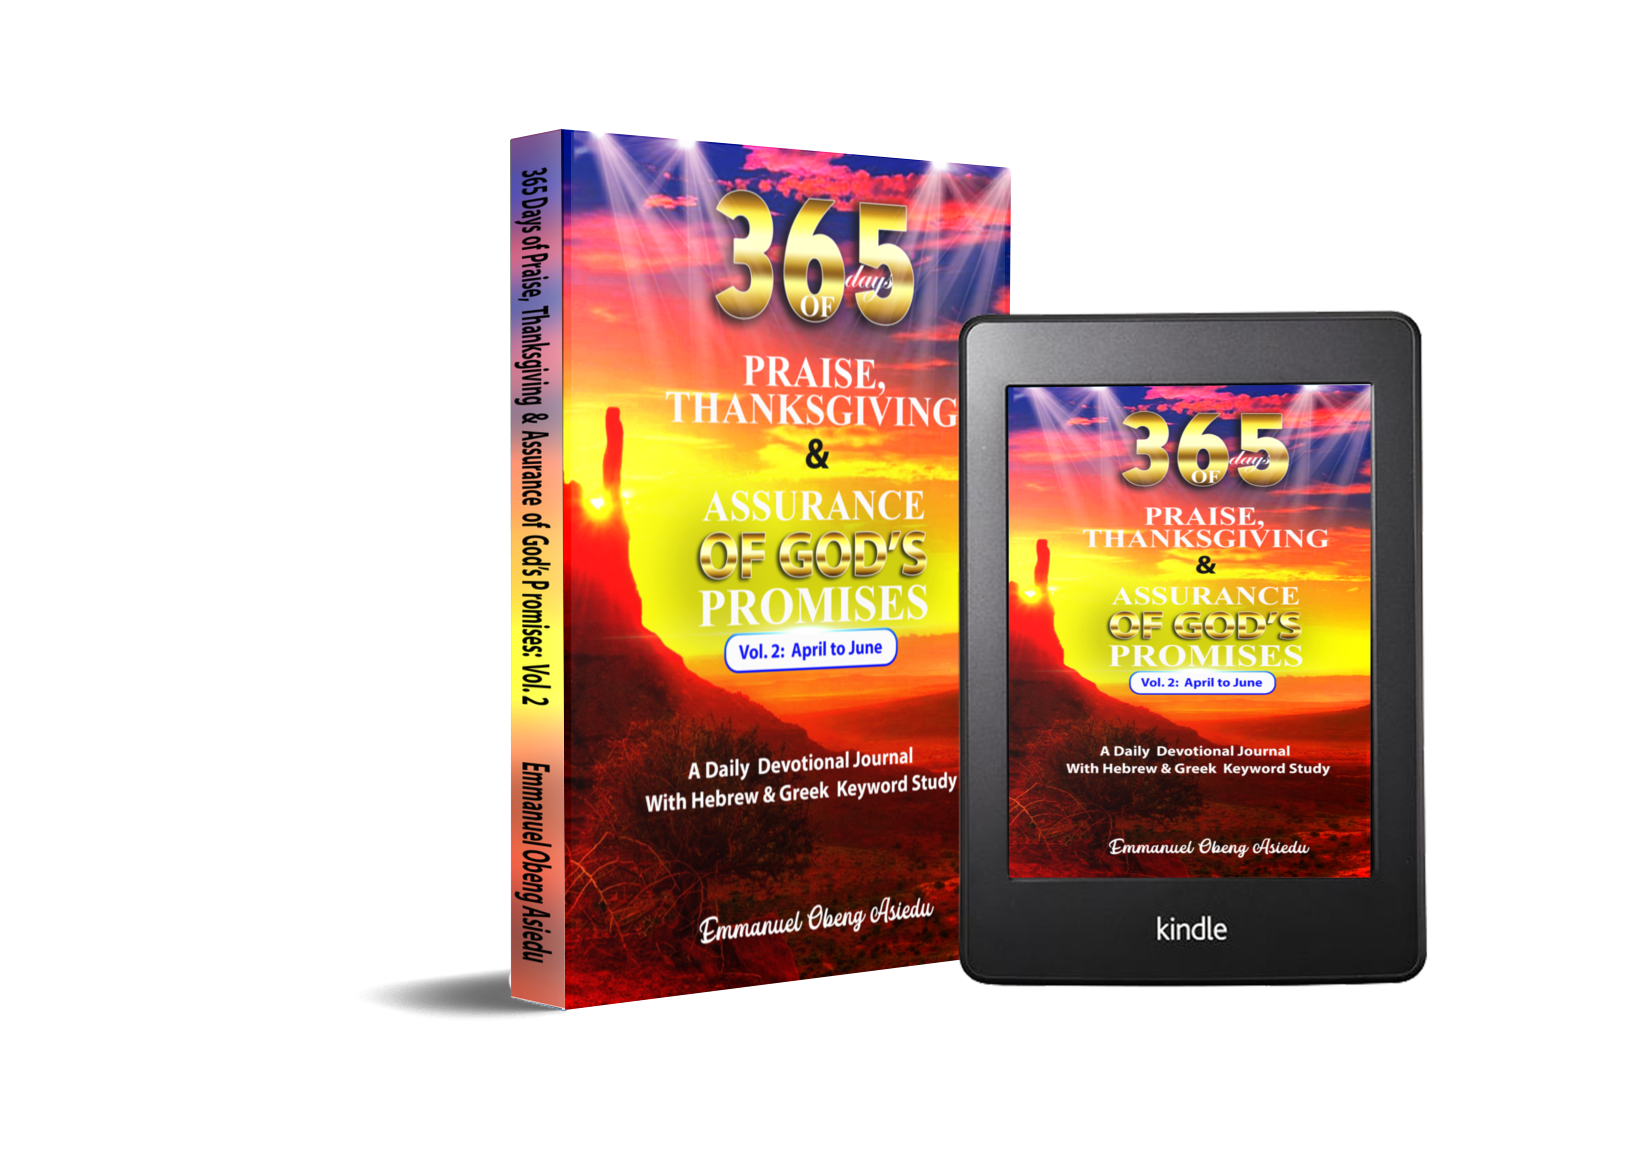 365-days-of-praise-thanksgiving-assurance-of-god-s-promises-volume